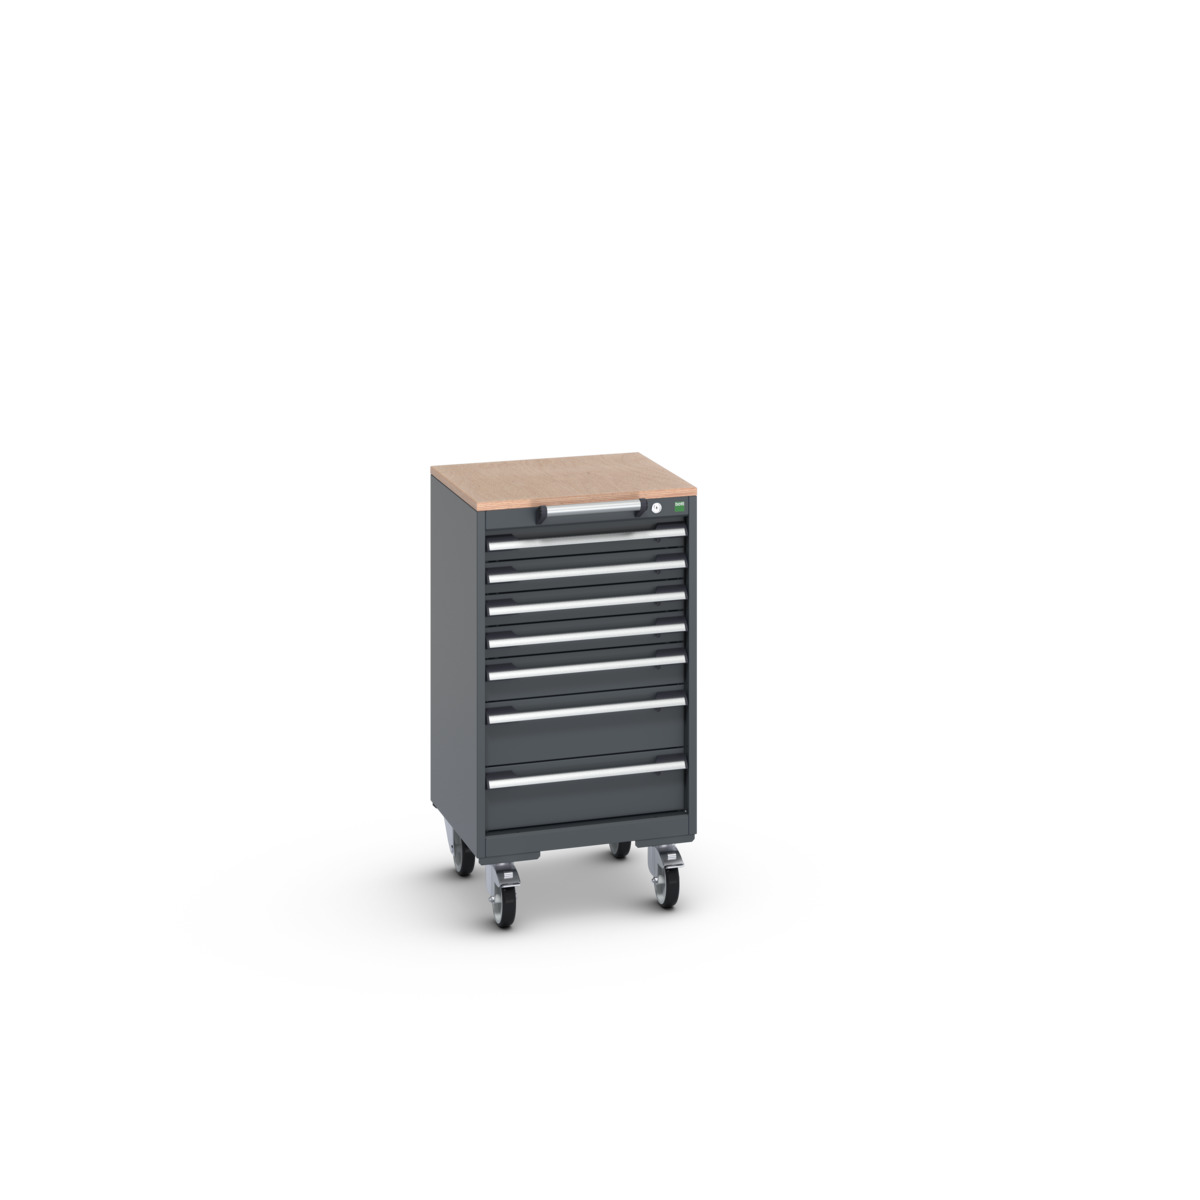 40402141.77V - cubio mobile cabinet